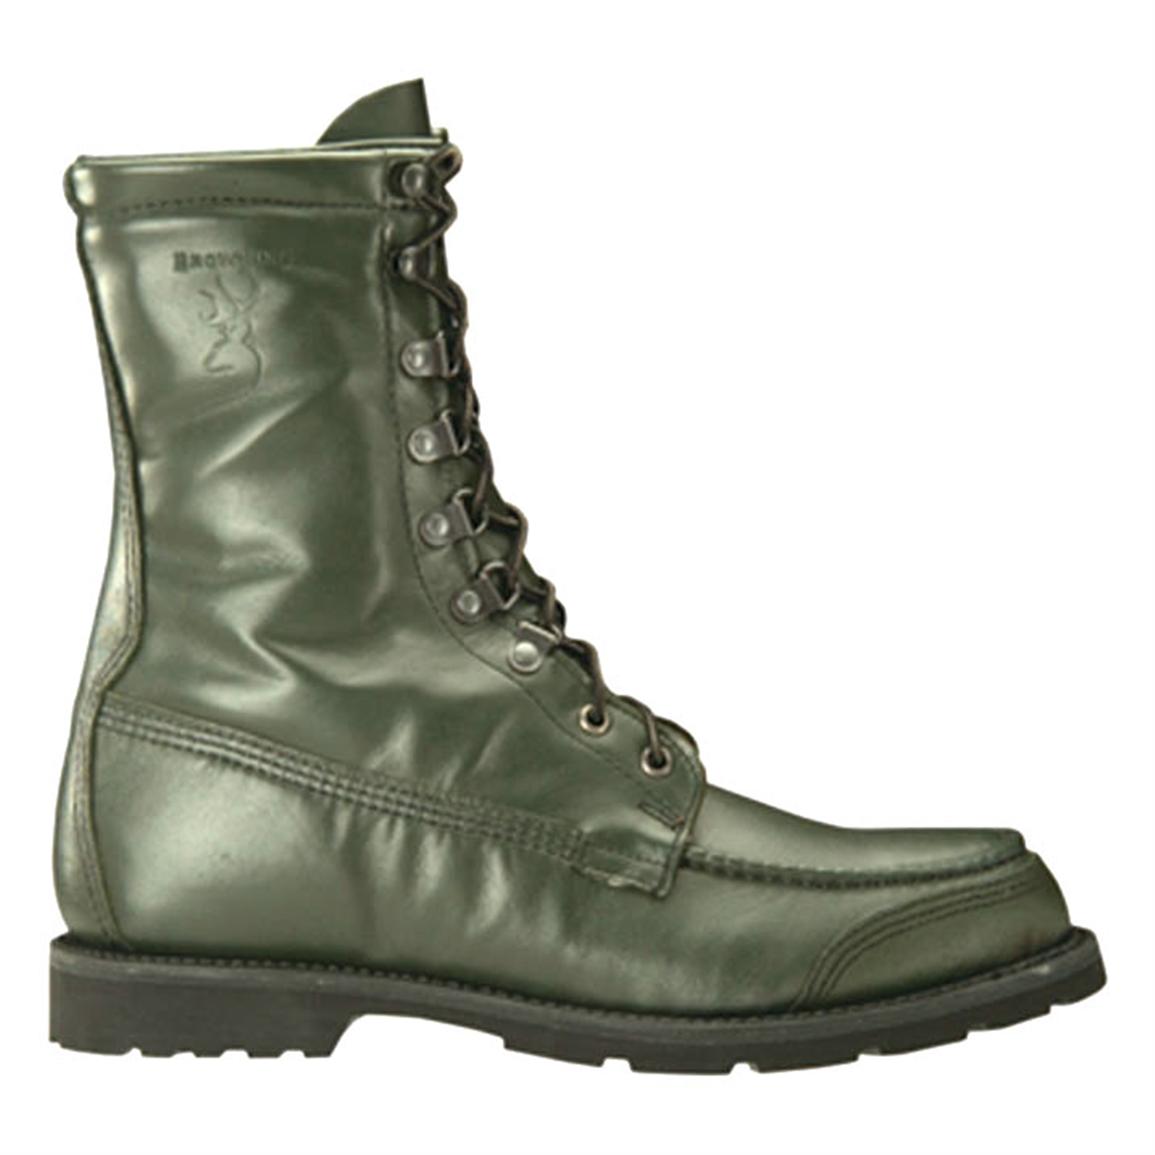 kangaroo leather work boots